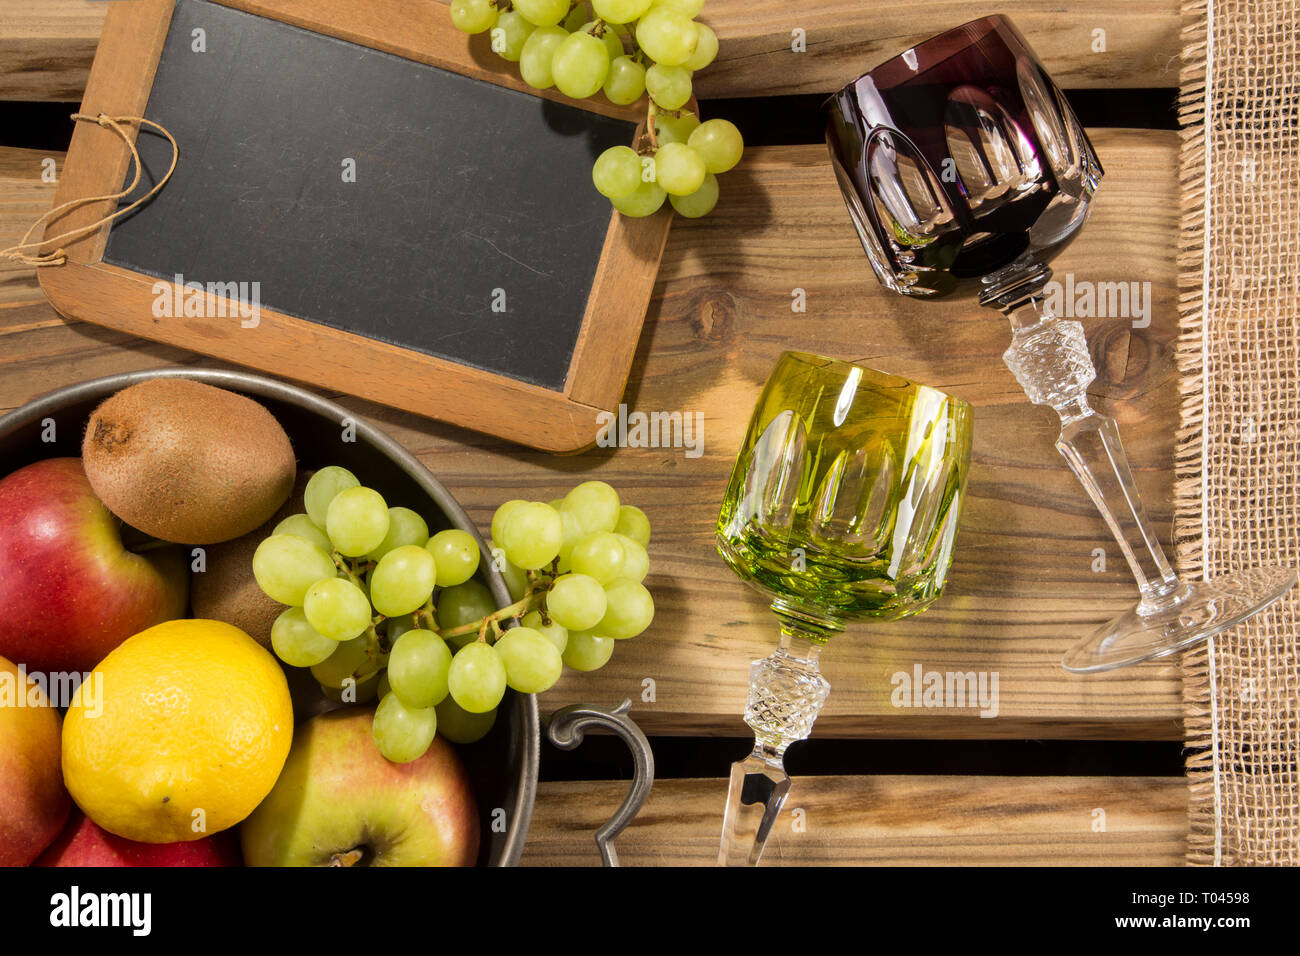 Traditionelle rummers/Weingläser auf rustikale Holzplanken und arrangierte Früchte in eine Schüssel, schwarzes Brett und Jute Tuch. Für die Weinkarte oder Restaurant. Stockfoto